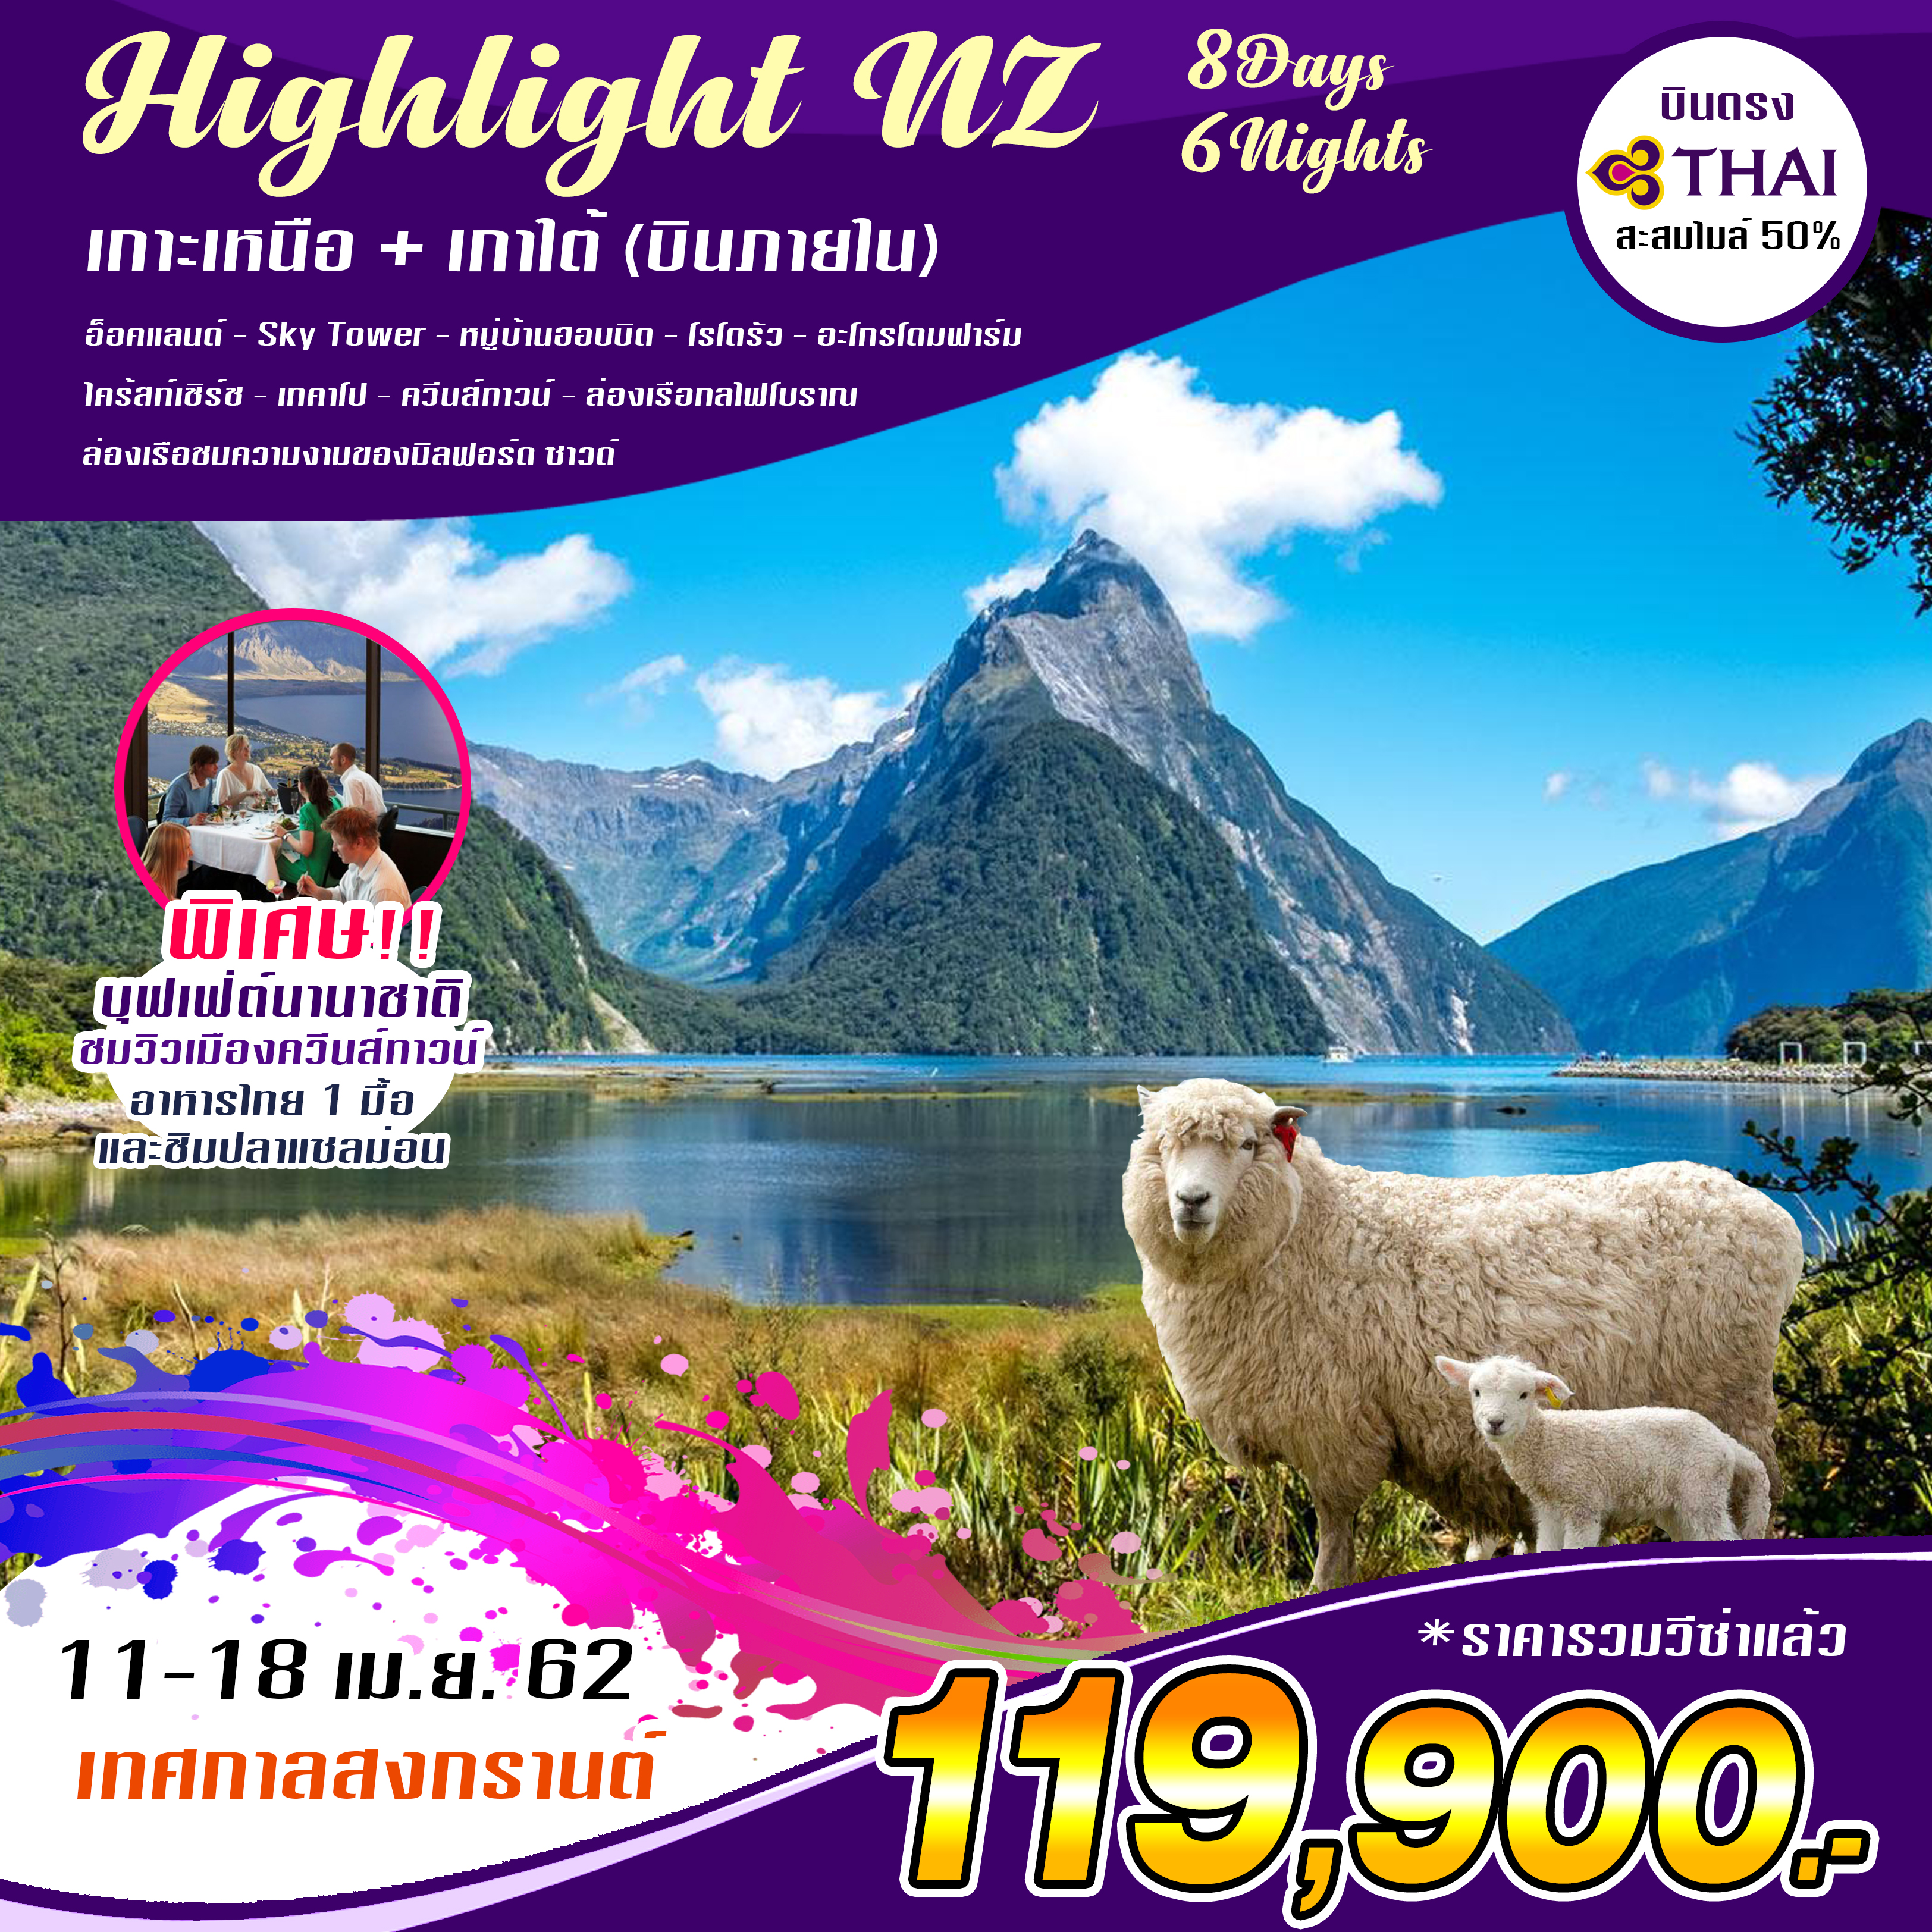 ทัวร์นิวซีแลนด์ Highlight New Zealand เกาะเหนือ เกาะใต้ 8วัน 6คืน (11-18 APR'19)